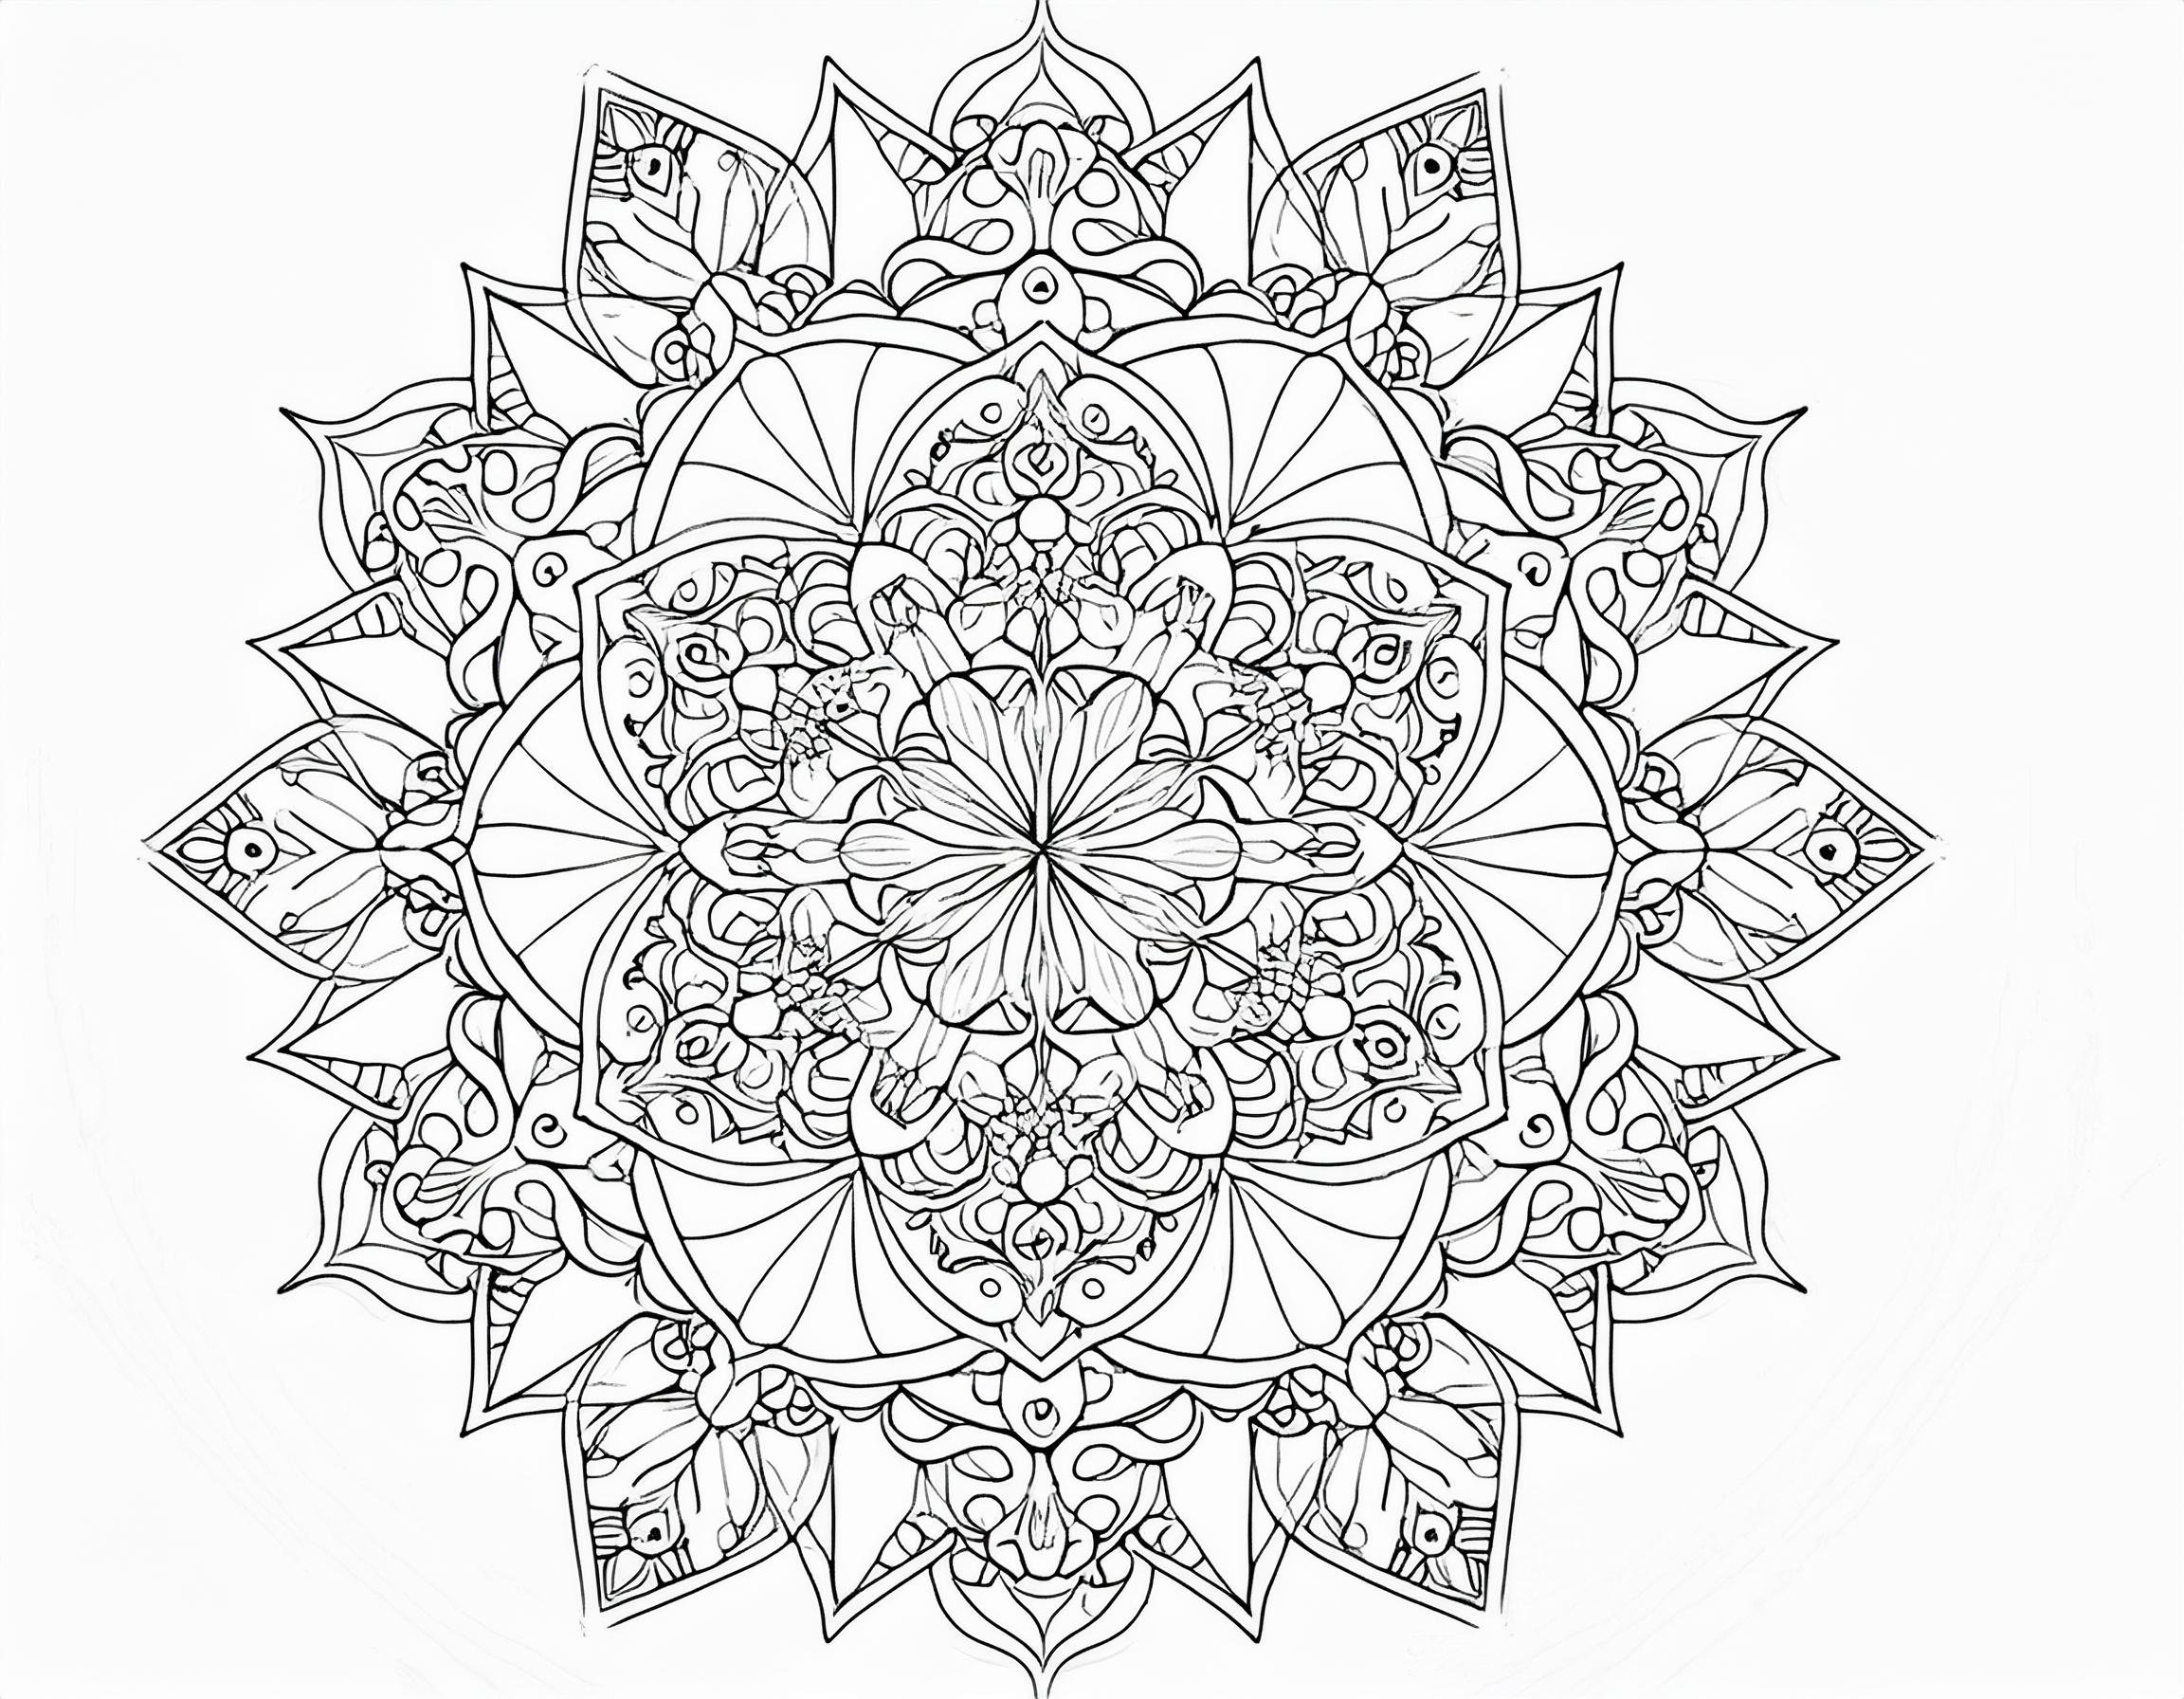 大人のぬりえ 幾何学模様が中心の美しい曼荼羅デザイン012